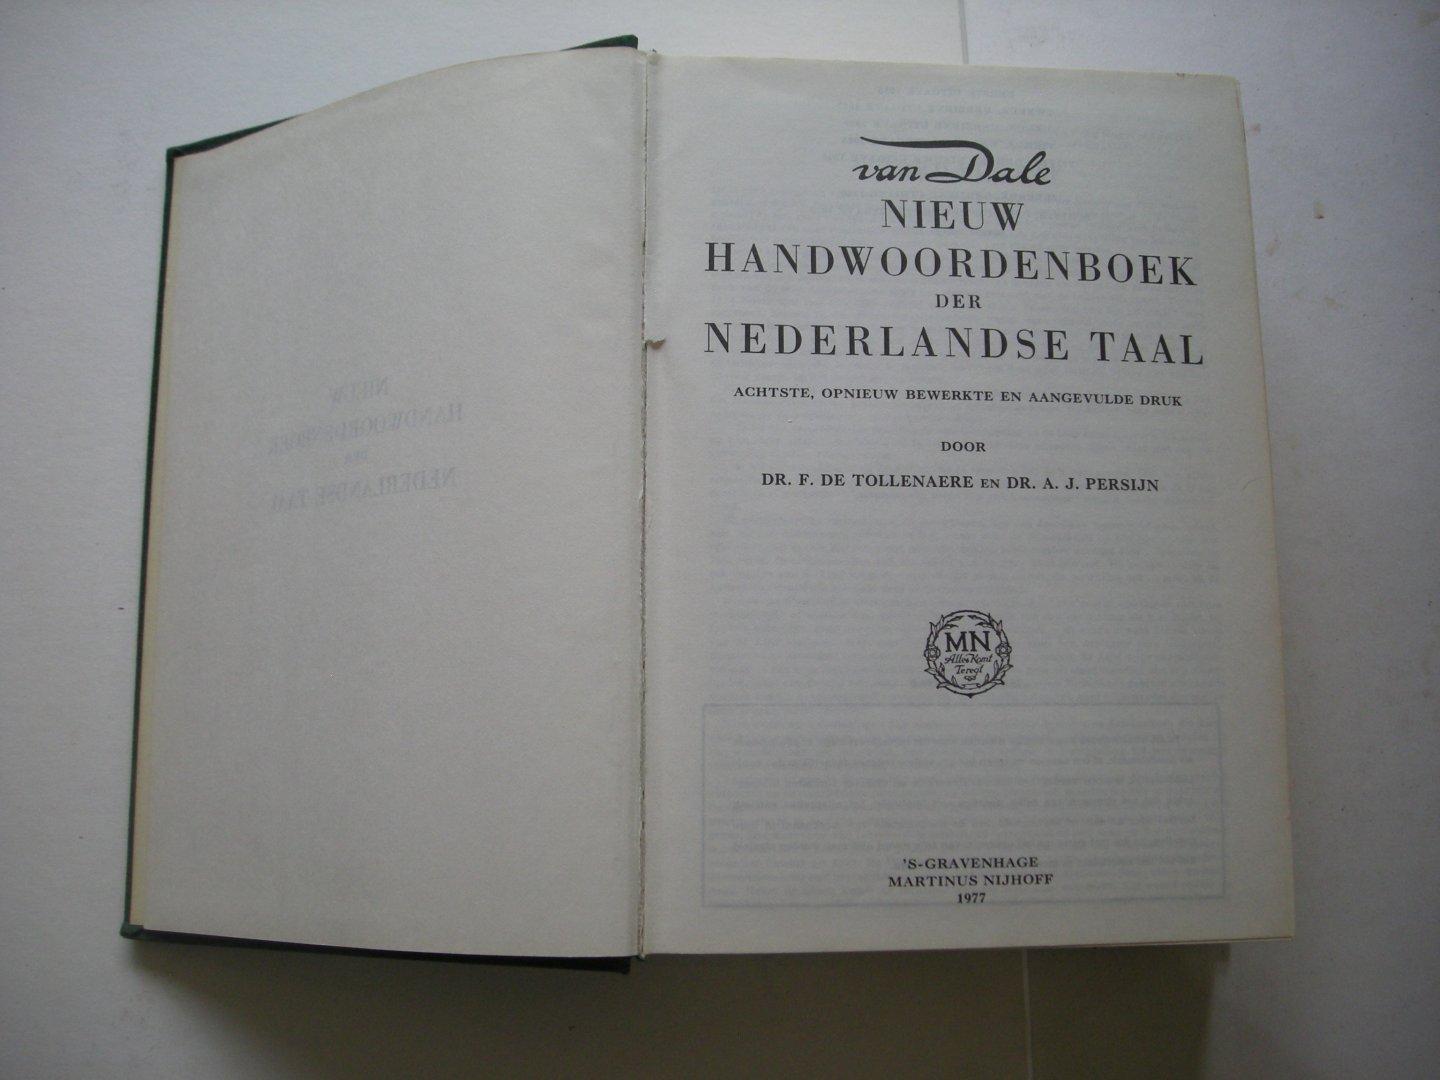 Tollenaere, Dr.F.de en Persijn, Dr.A.J. - Van Dale Nieuw Handwoordenboek der Nederlandse Taal